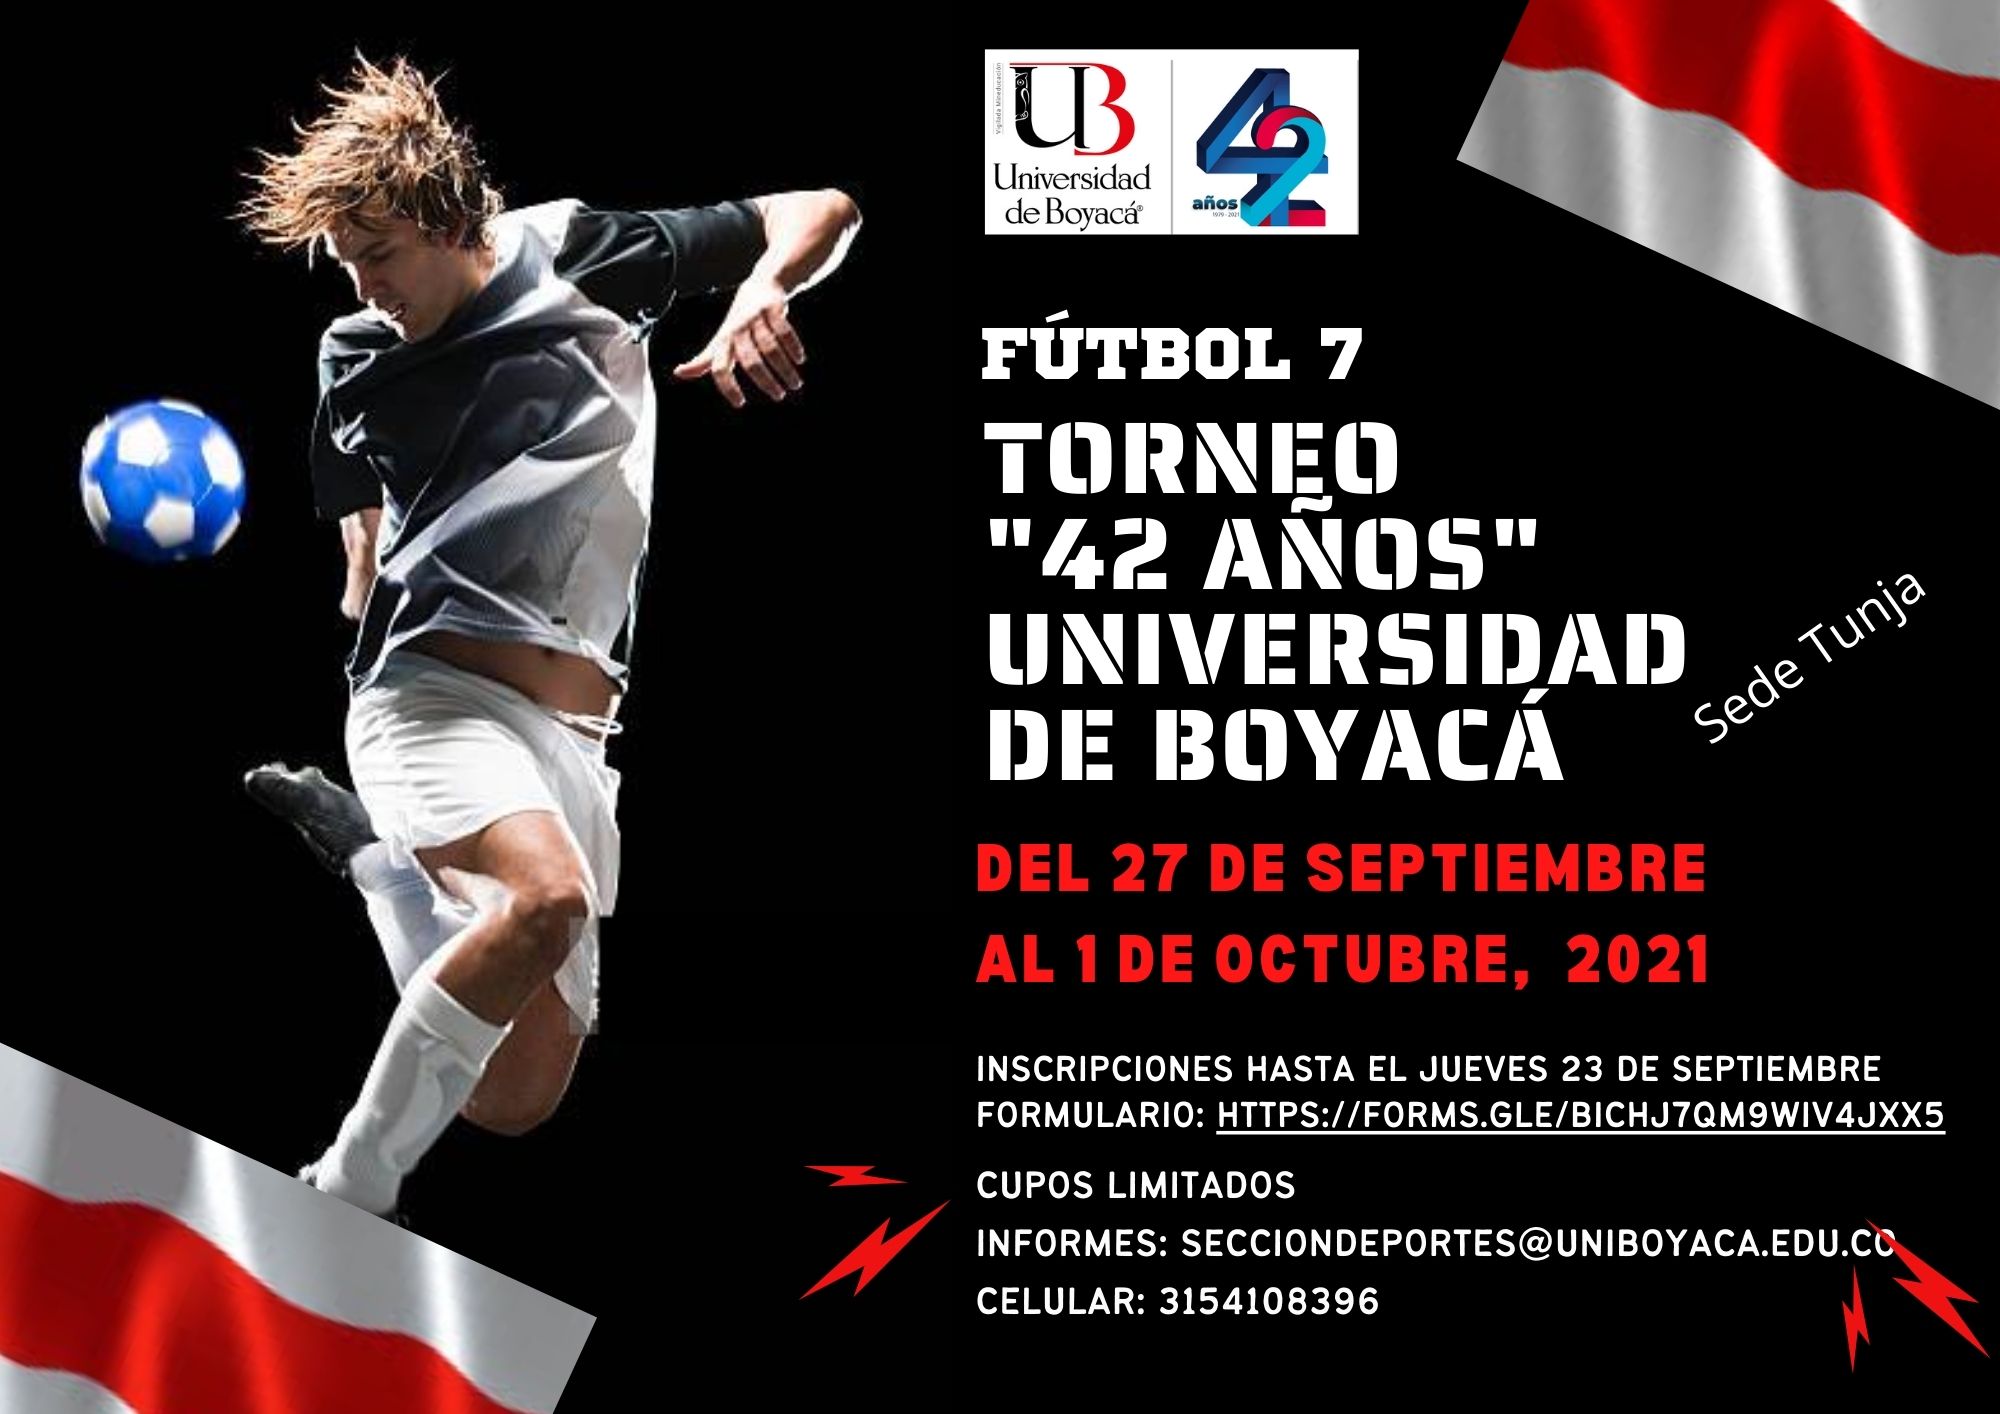 Torneo de Fútbol 7 - Universidad de Boyacá "42 Años"